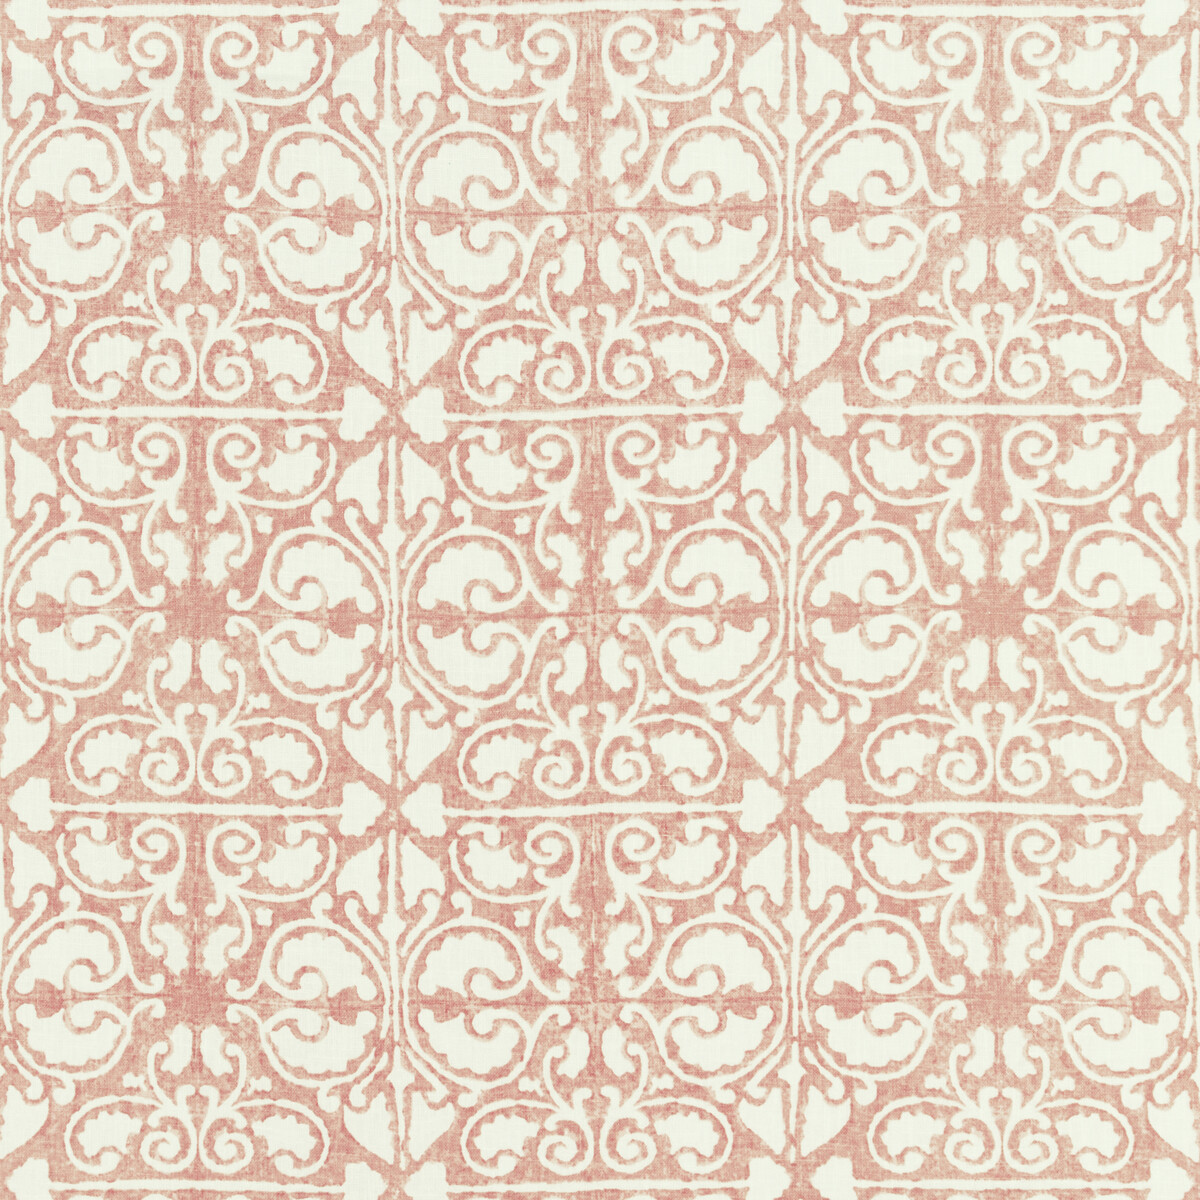 Kravet Basics Agra Tile.17.0 Kravet Basics Multipurpose Fabric in Agra Tile-17/Pink/White